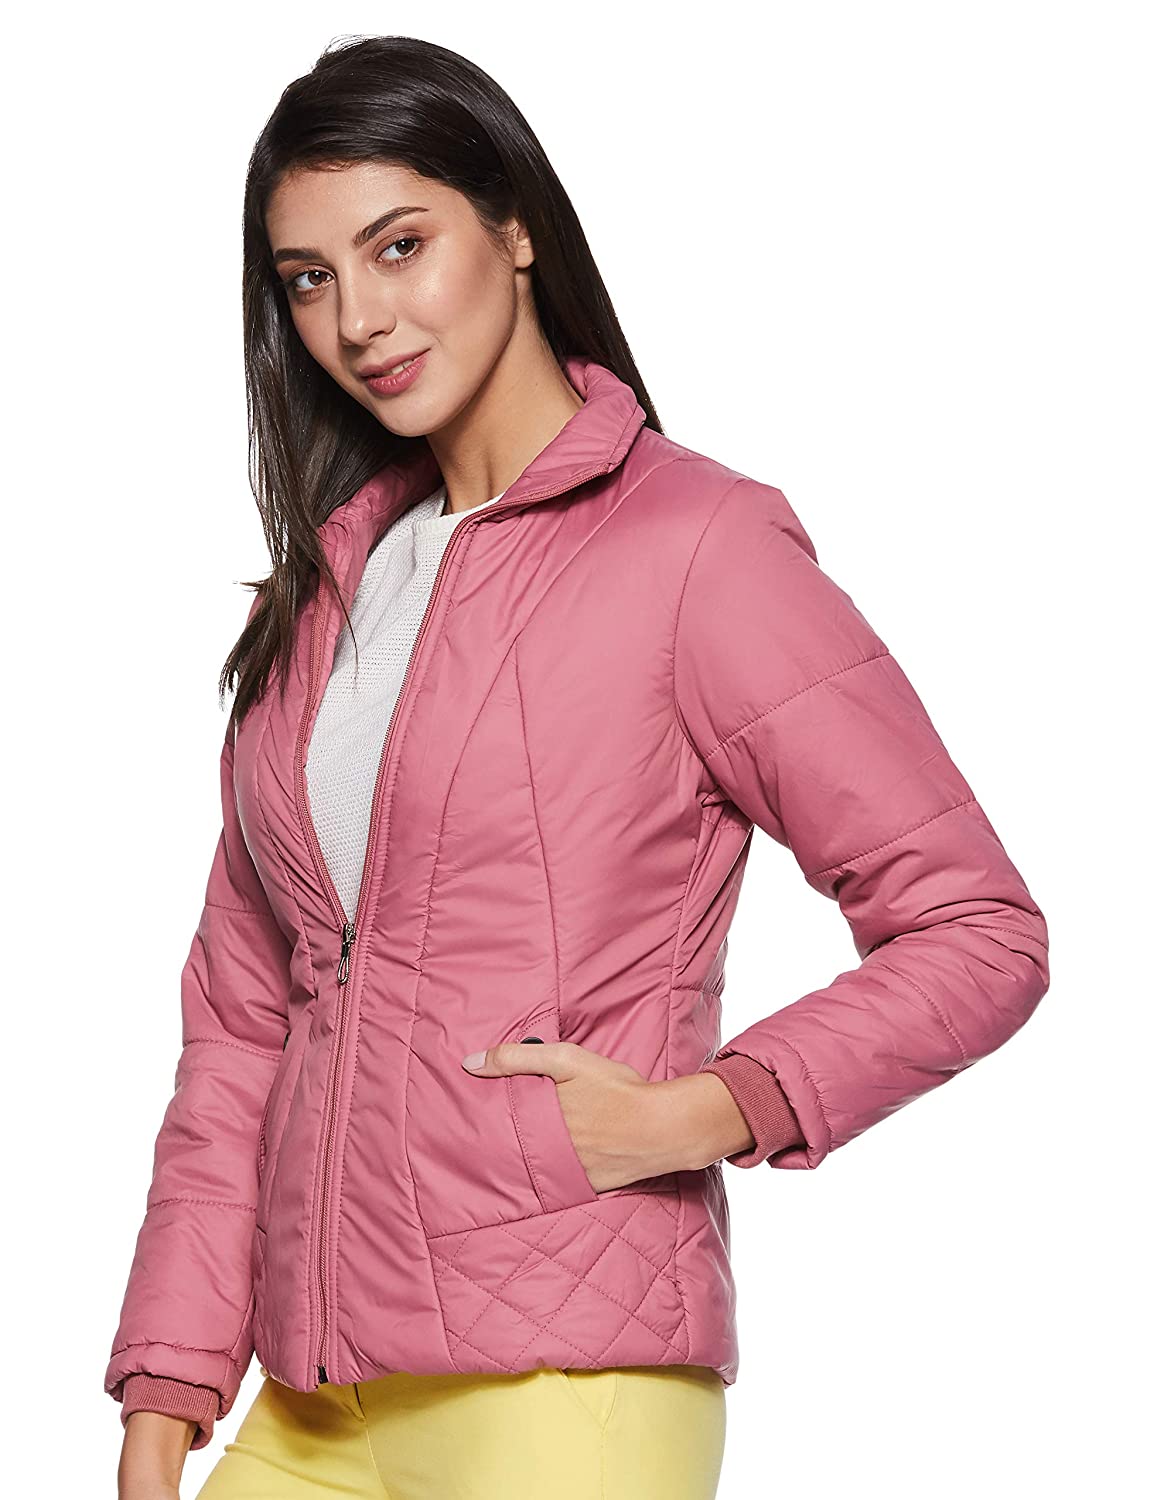 Amazon Deal: सर्दी के लिए चाहिए बढ़िया ब्रांडेड जैकेट? ये हैं हजार रुपये से कम में मिल रही Women Winter jacket की डील